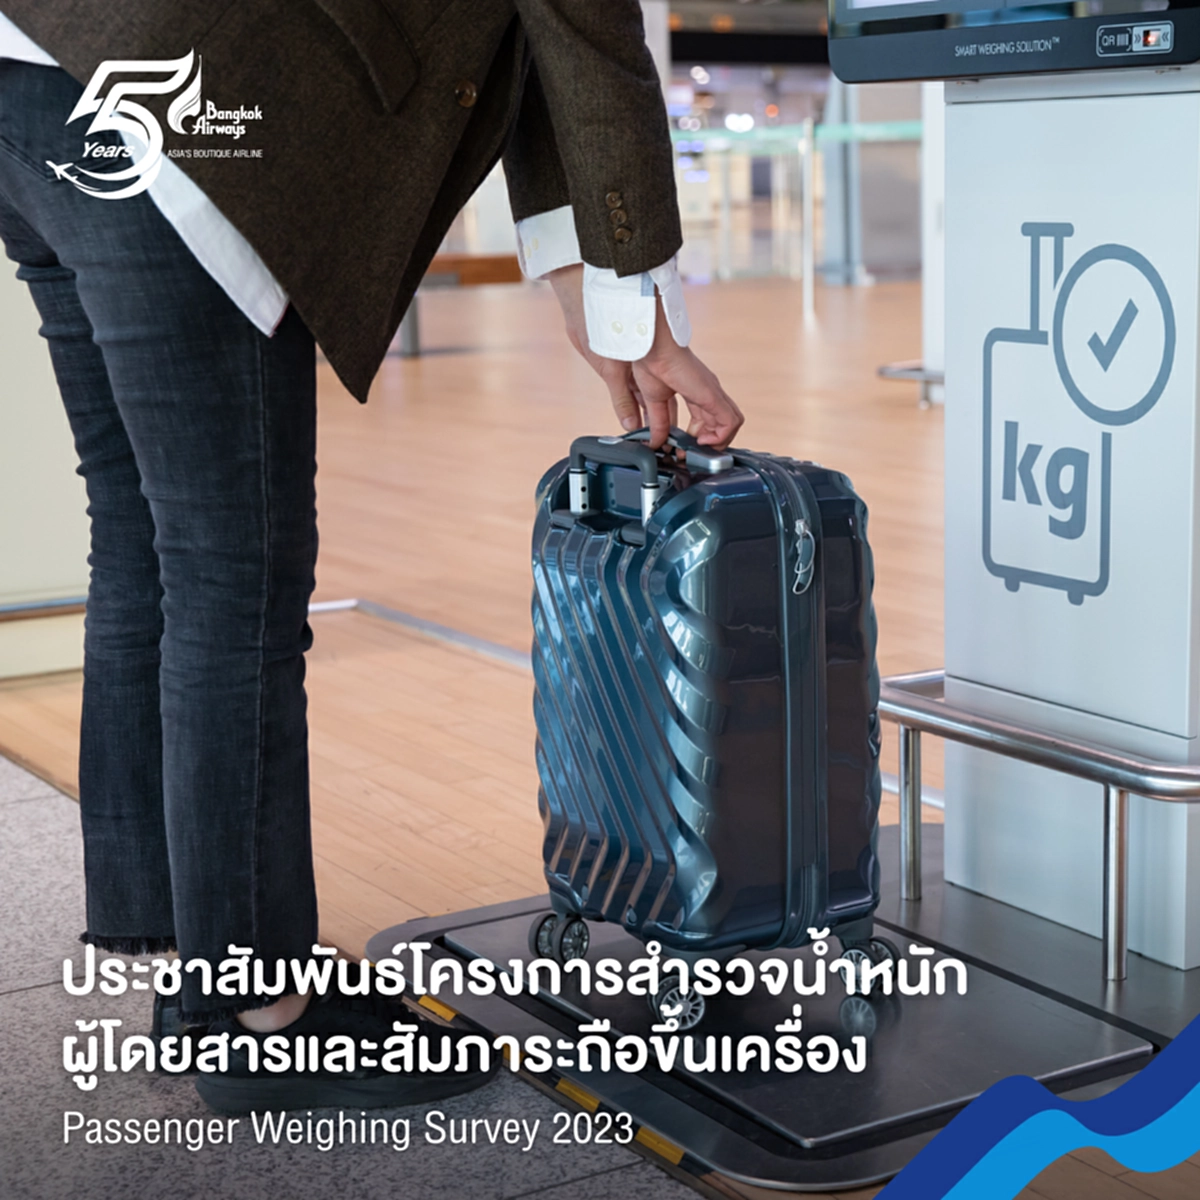 Bangkok Airways ประชาสัมพันธ์โครงการสำรวจน้ำหนักผู้โดยสารและสัมภาระถือขึ้นเครื่อง Passenger Weighing Survey 2023